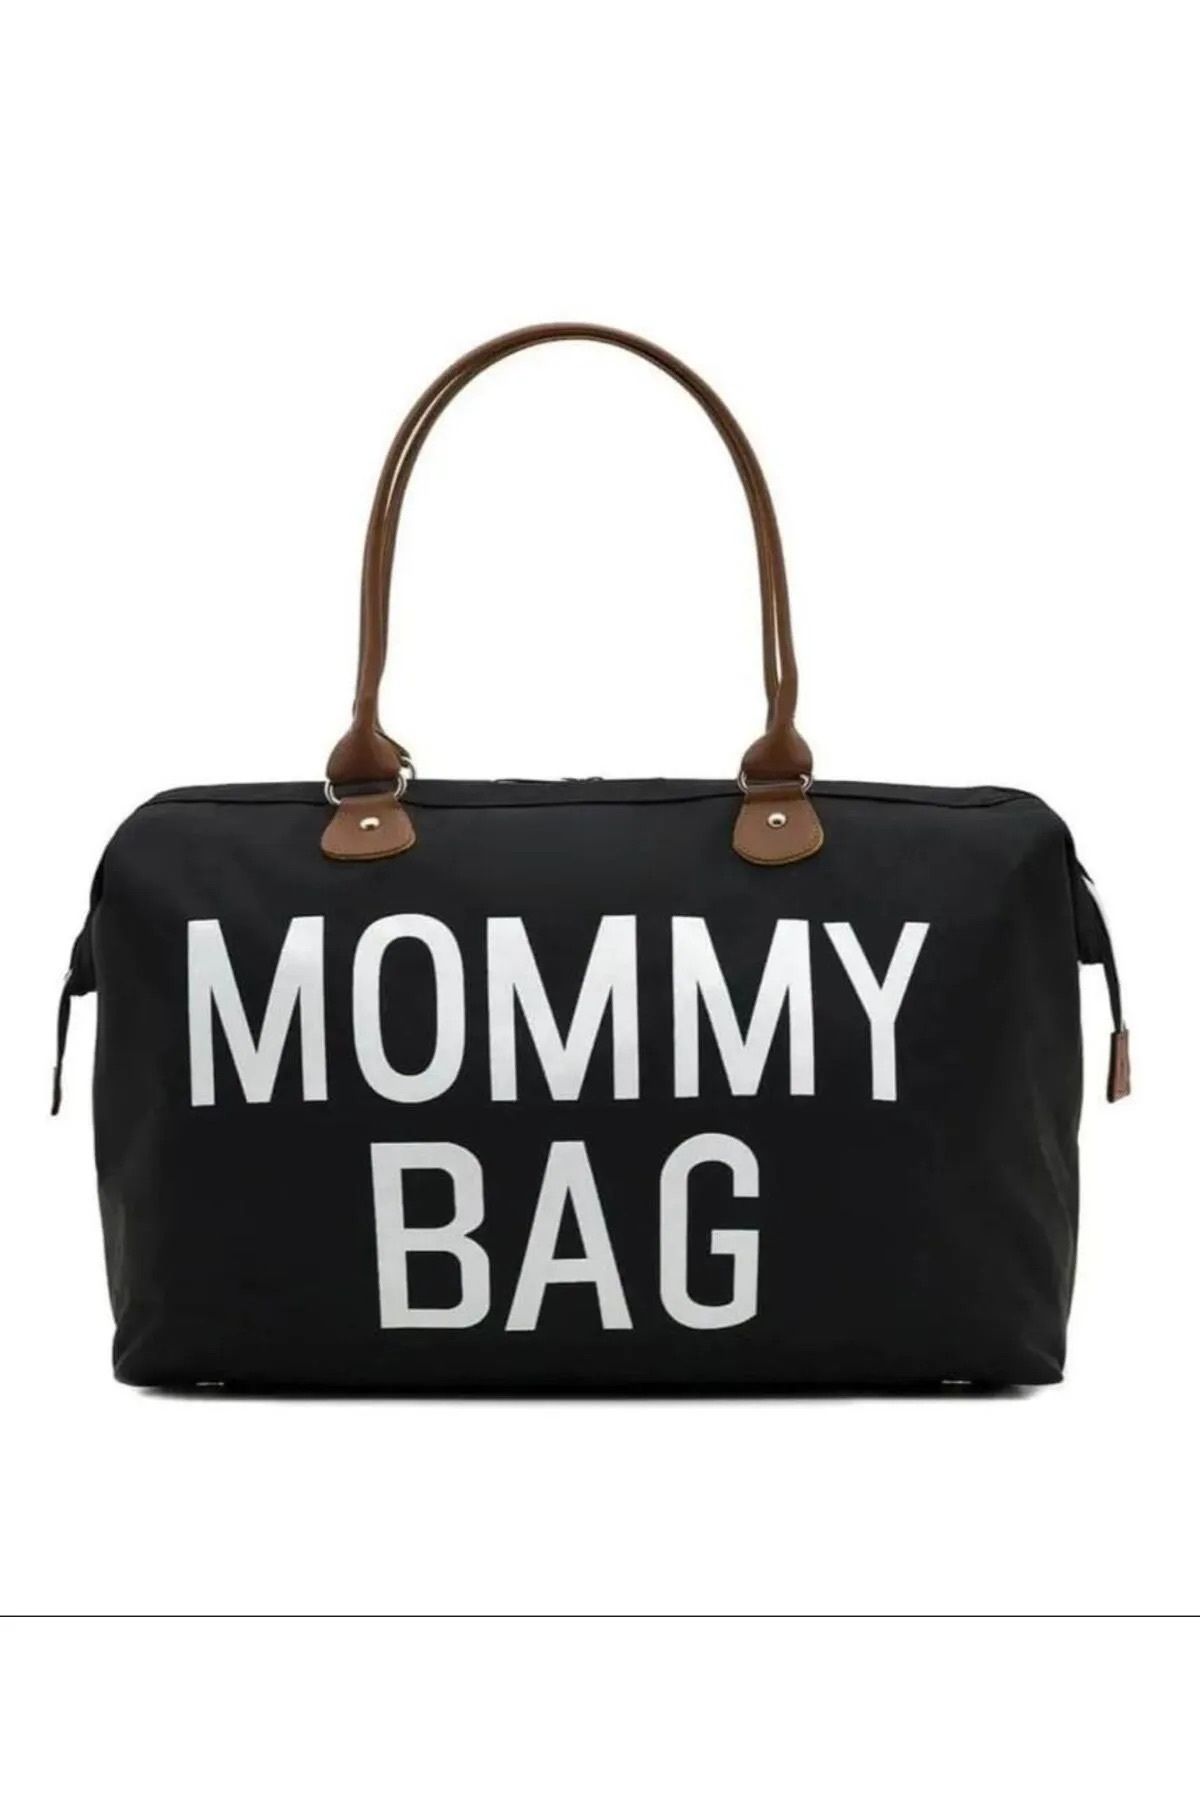 Bagimoo Mommy Bag Termal Biberonlu Anne Bebek Bakım Çantası